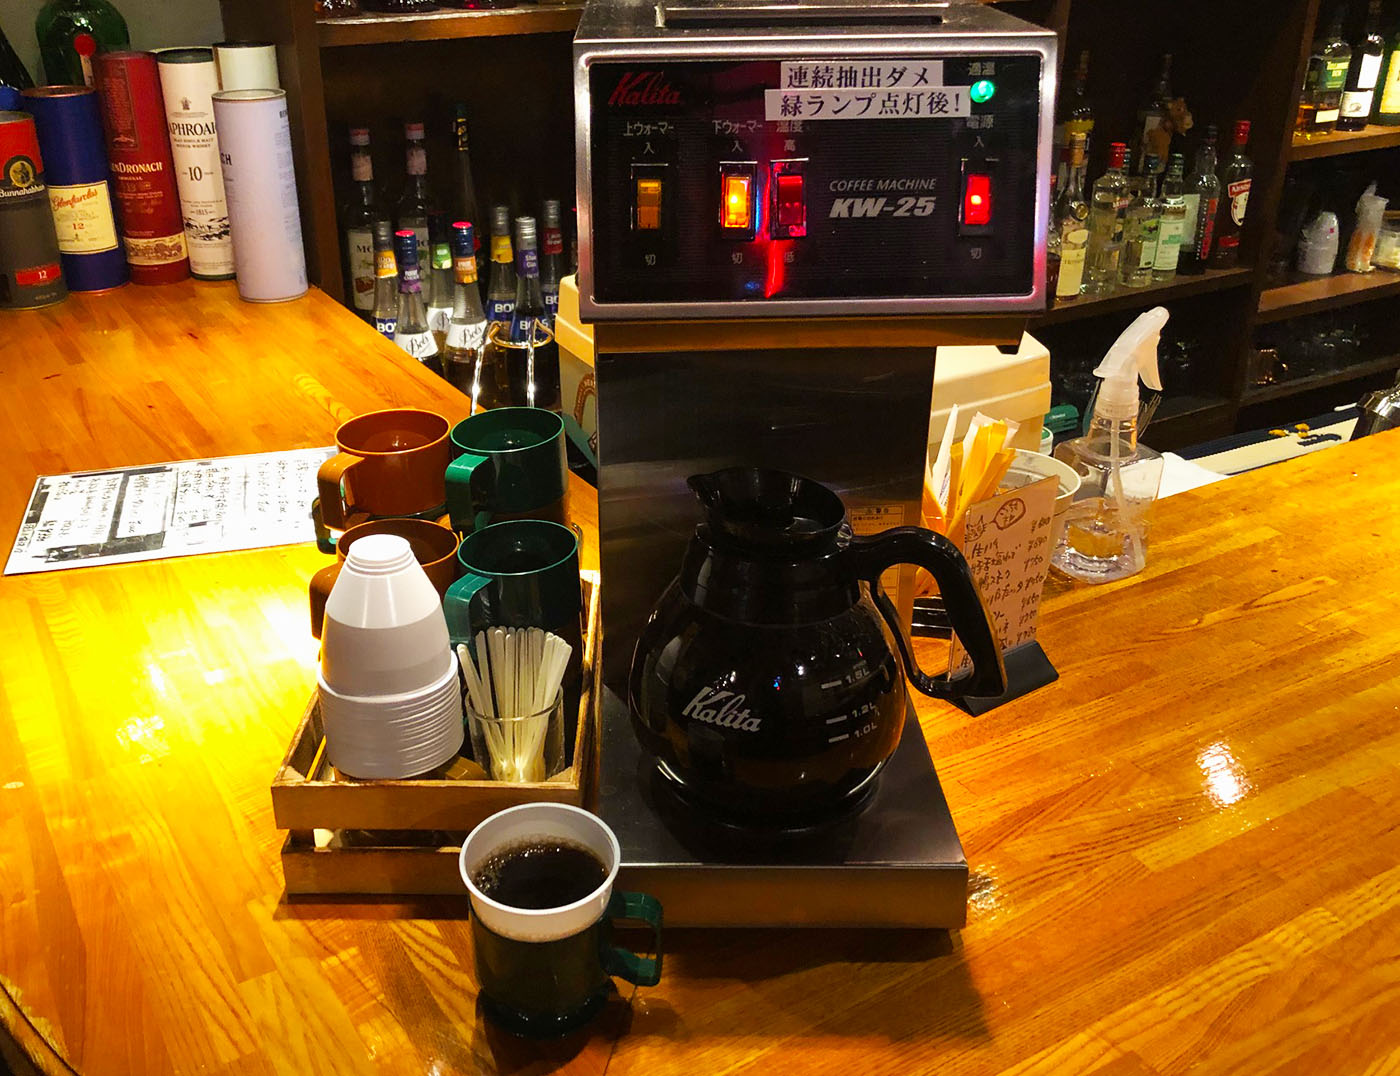 ワンステップ浦和店・ランチのホットコーヒー(100円)はセルフサービスでおかわり自由